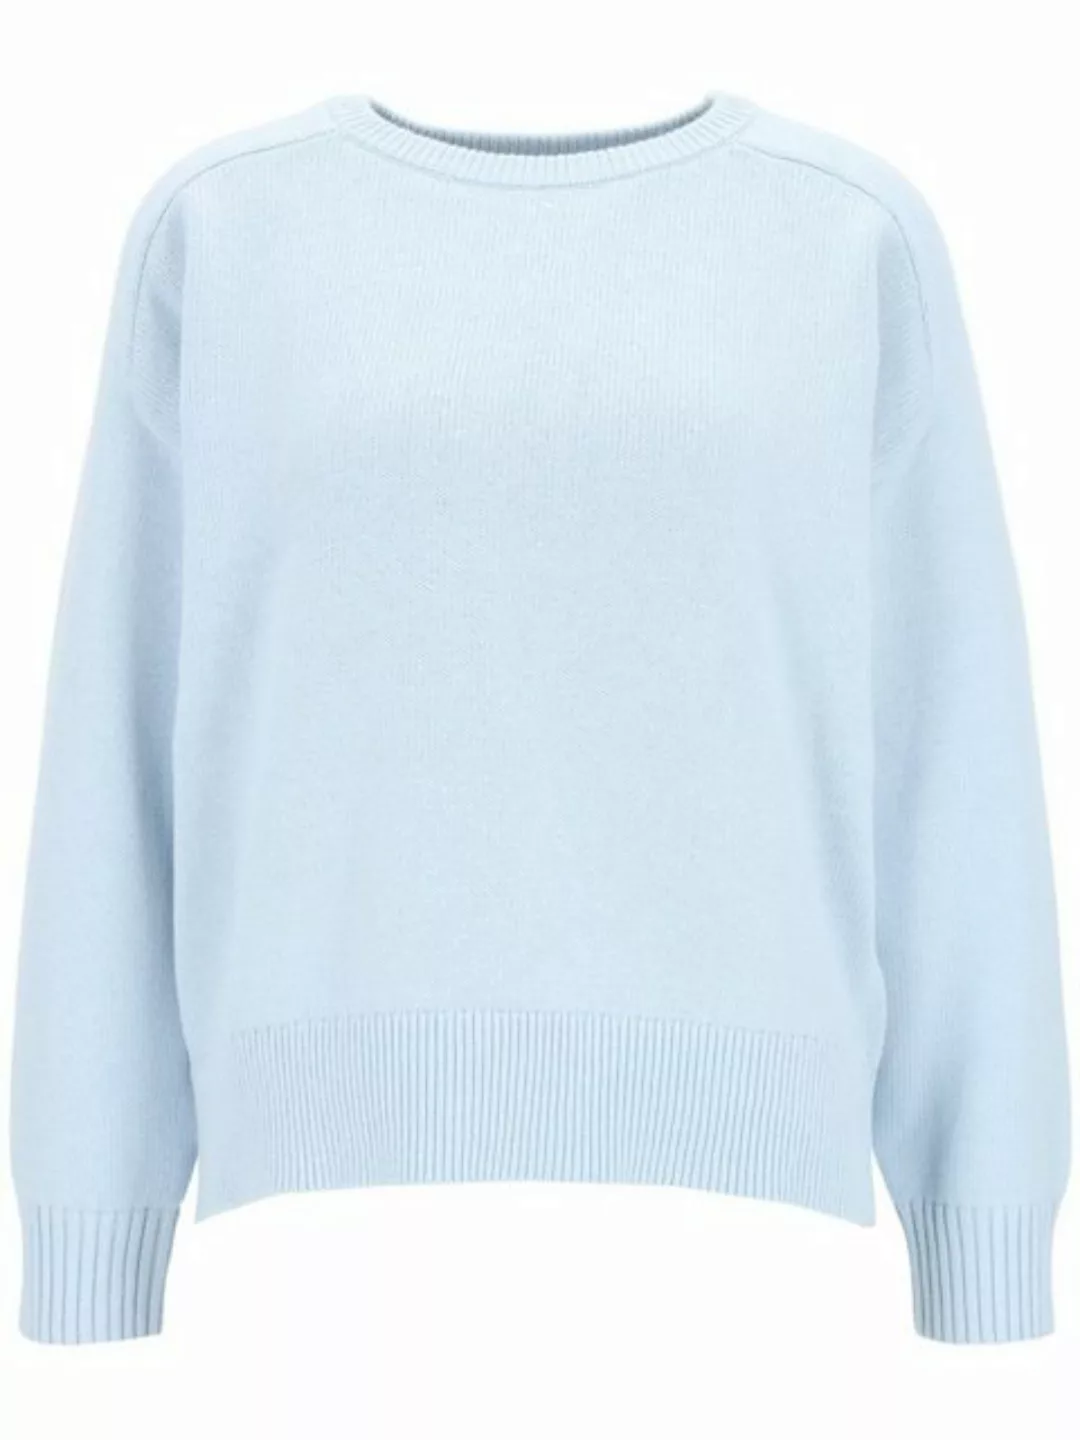 IN LINEA Sweatshirt Pullover, Rundhals, 1/1-Arm günstig online kaufen